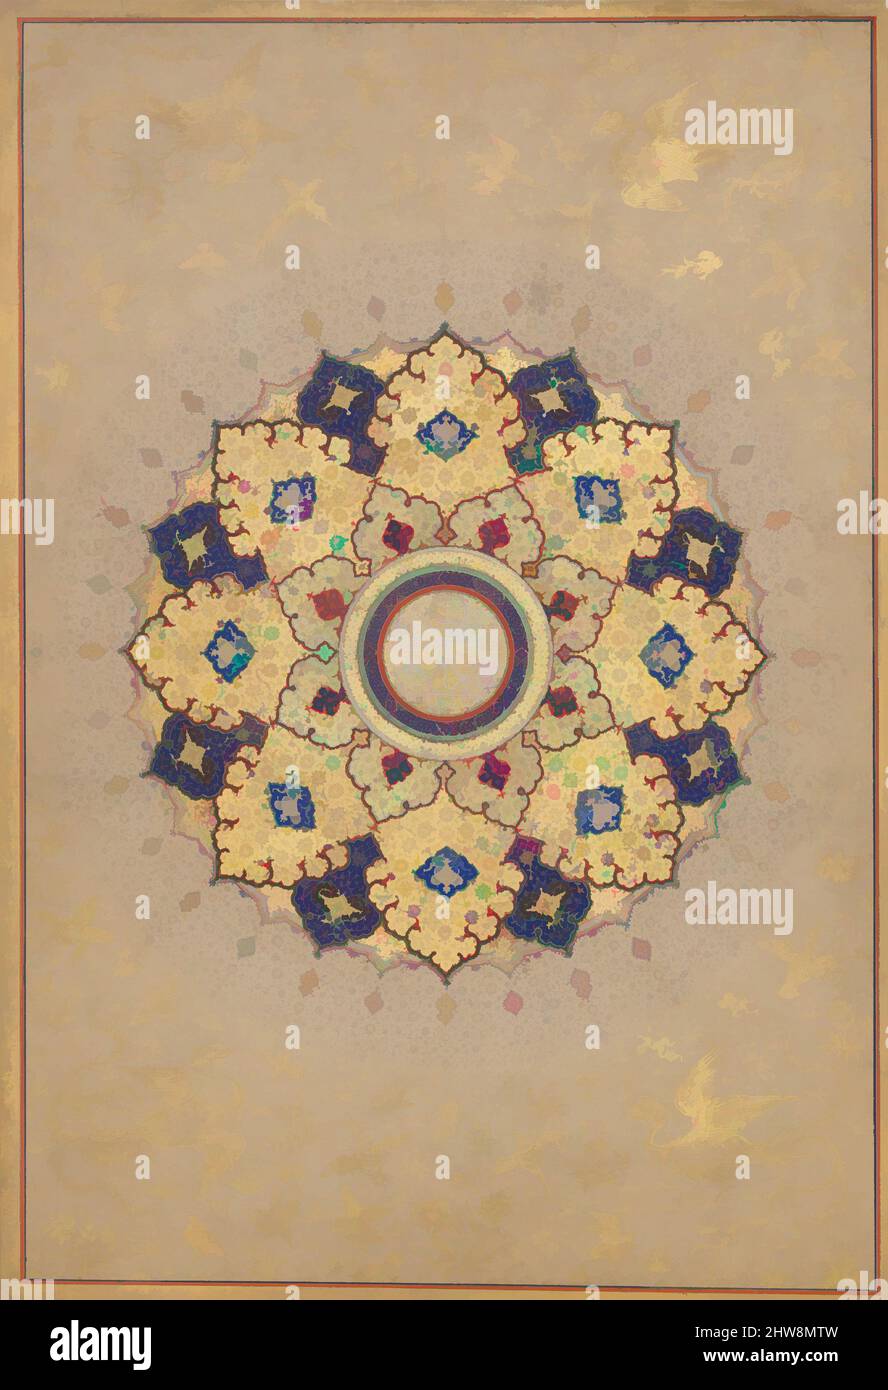 Arte ispirata da Rosette che porta i nomi e i titoli di Shah Jahan', Folio dal Shah Jahan Album, recto: CA. 1645; verso: ca. 1630–40, prodotto in India, inchiostro, acquerello opaco e oro su carta, H. 15 3/16 poll. (38,6 cm), Codices, una sciamsa (letteralmente, sole) tradizionalmente aperta, opere classiche modernizzate da Artotop con un tuffo di modernità. Forme, colore e valore, impatto visivo accattivante sulle emozioni artistiche attraverso la libertà delle opere d'arte in modo contemporaneo. Un messaggio senza tempo che persegue una nuova direzione selvaggiamente creativa. Artisti che si rivolgono al supporto digitale e creano l'NFT Artotop Foto Stock